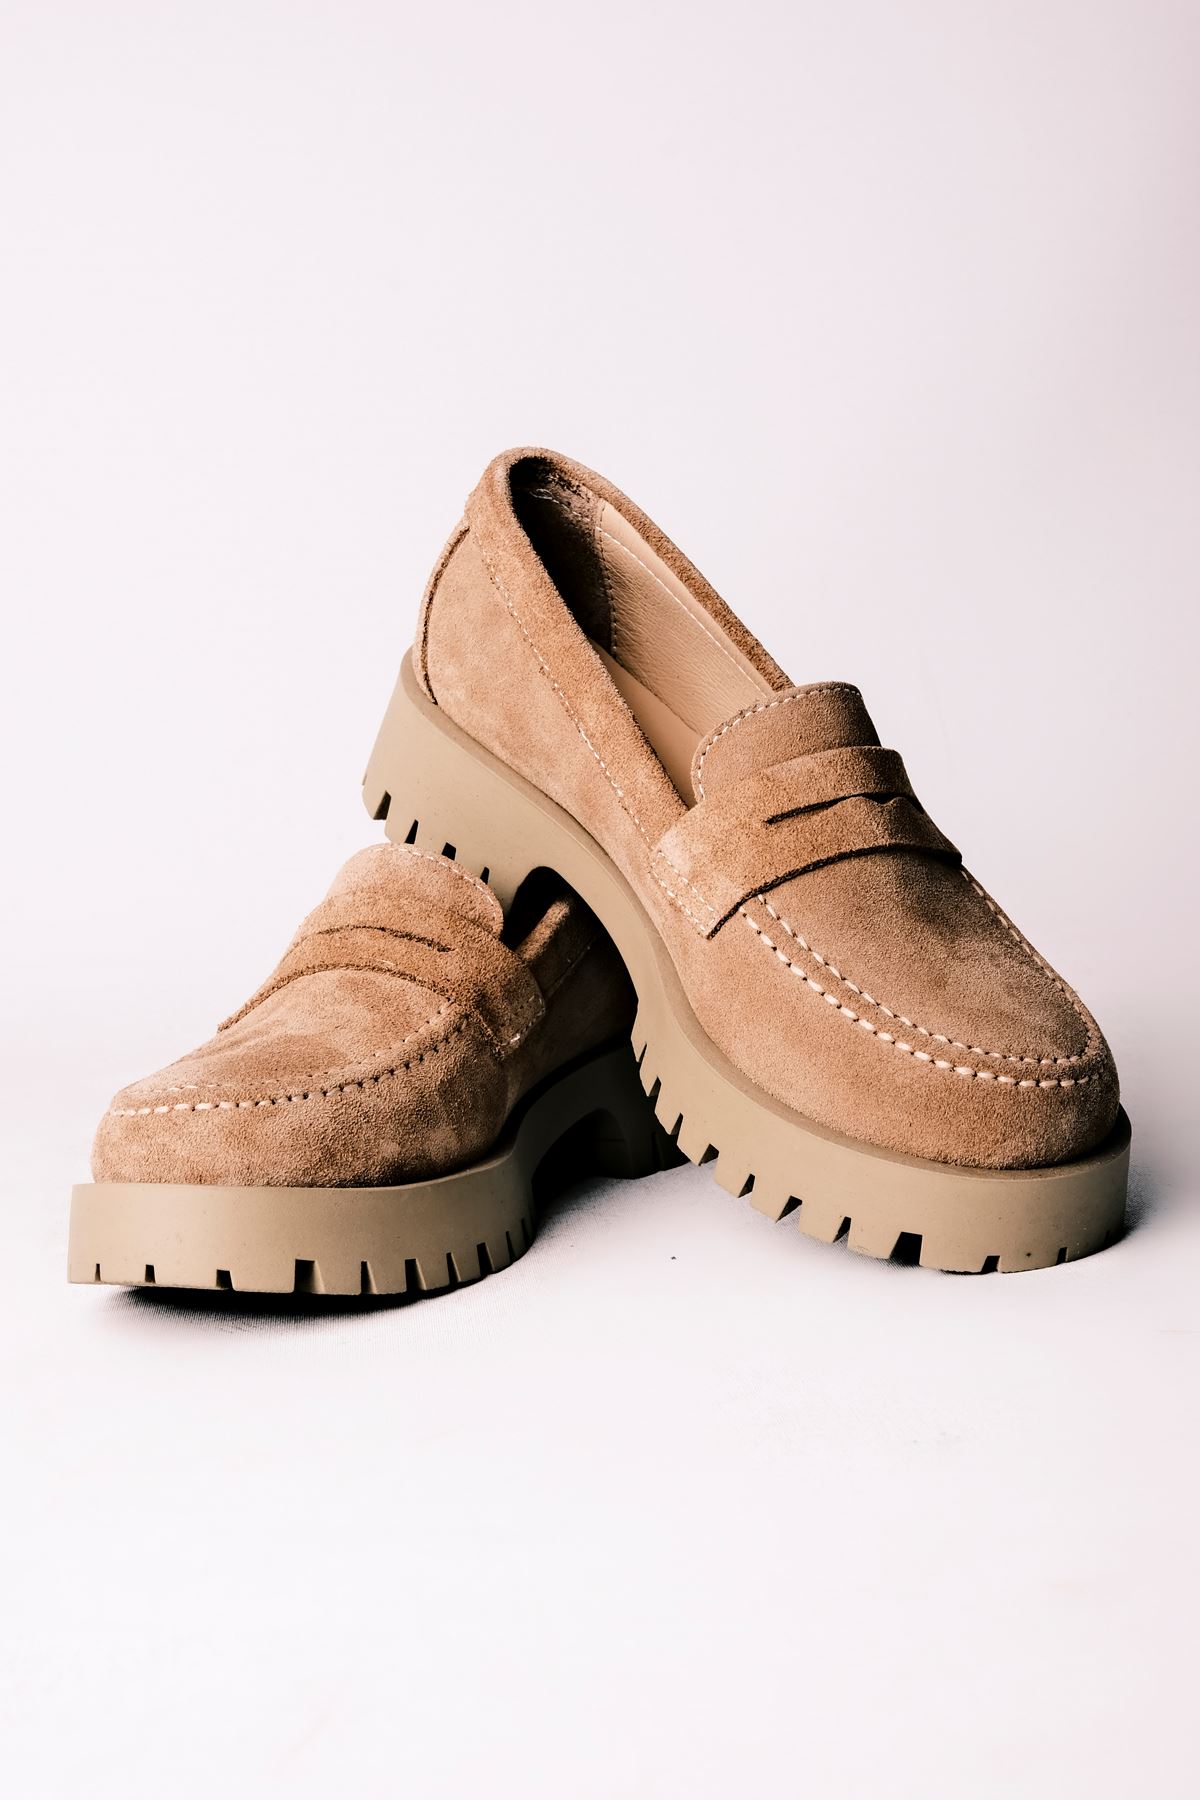 Deva Kadın Hakiki Deri Oxford Ayakkabı Düz Model-S.VİZYON